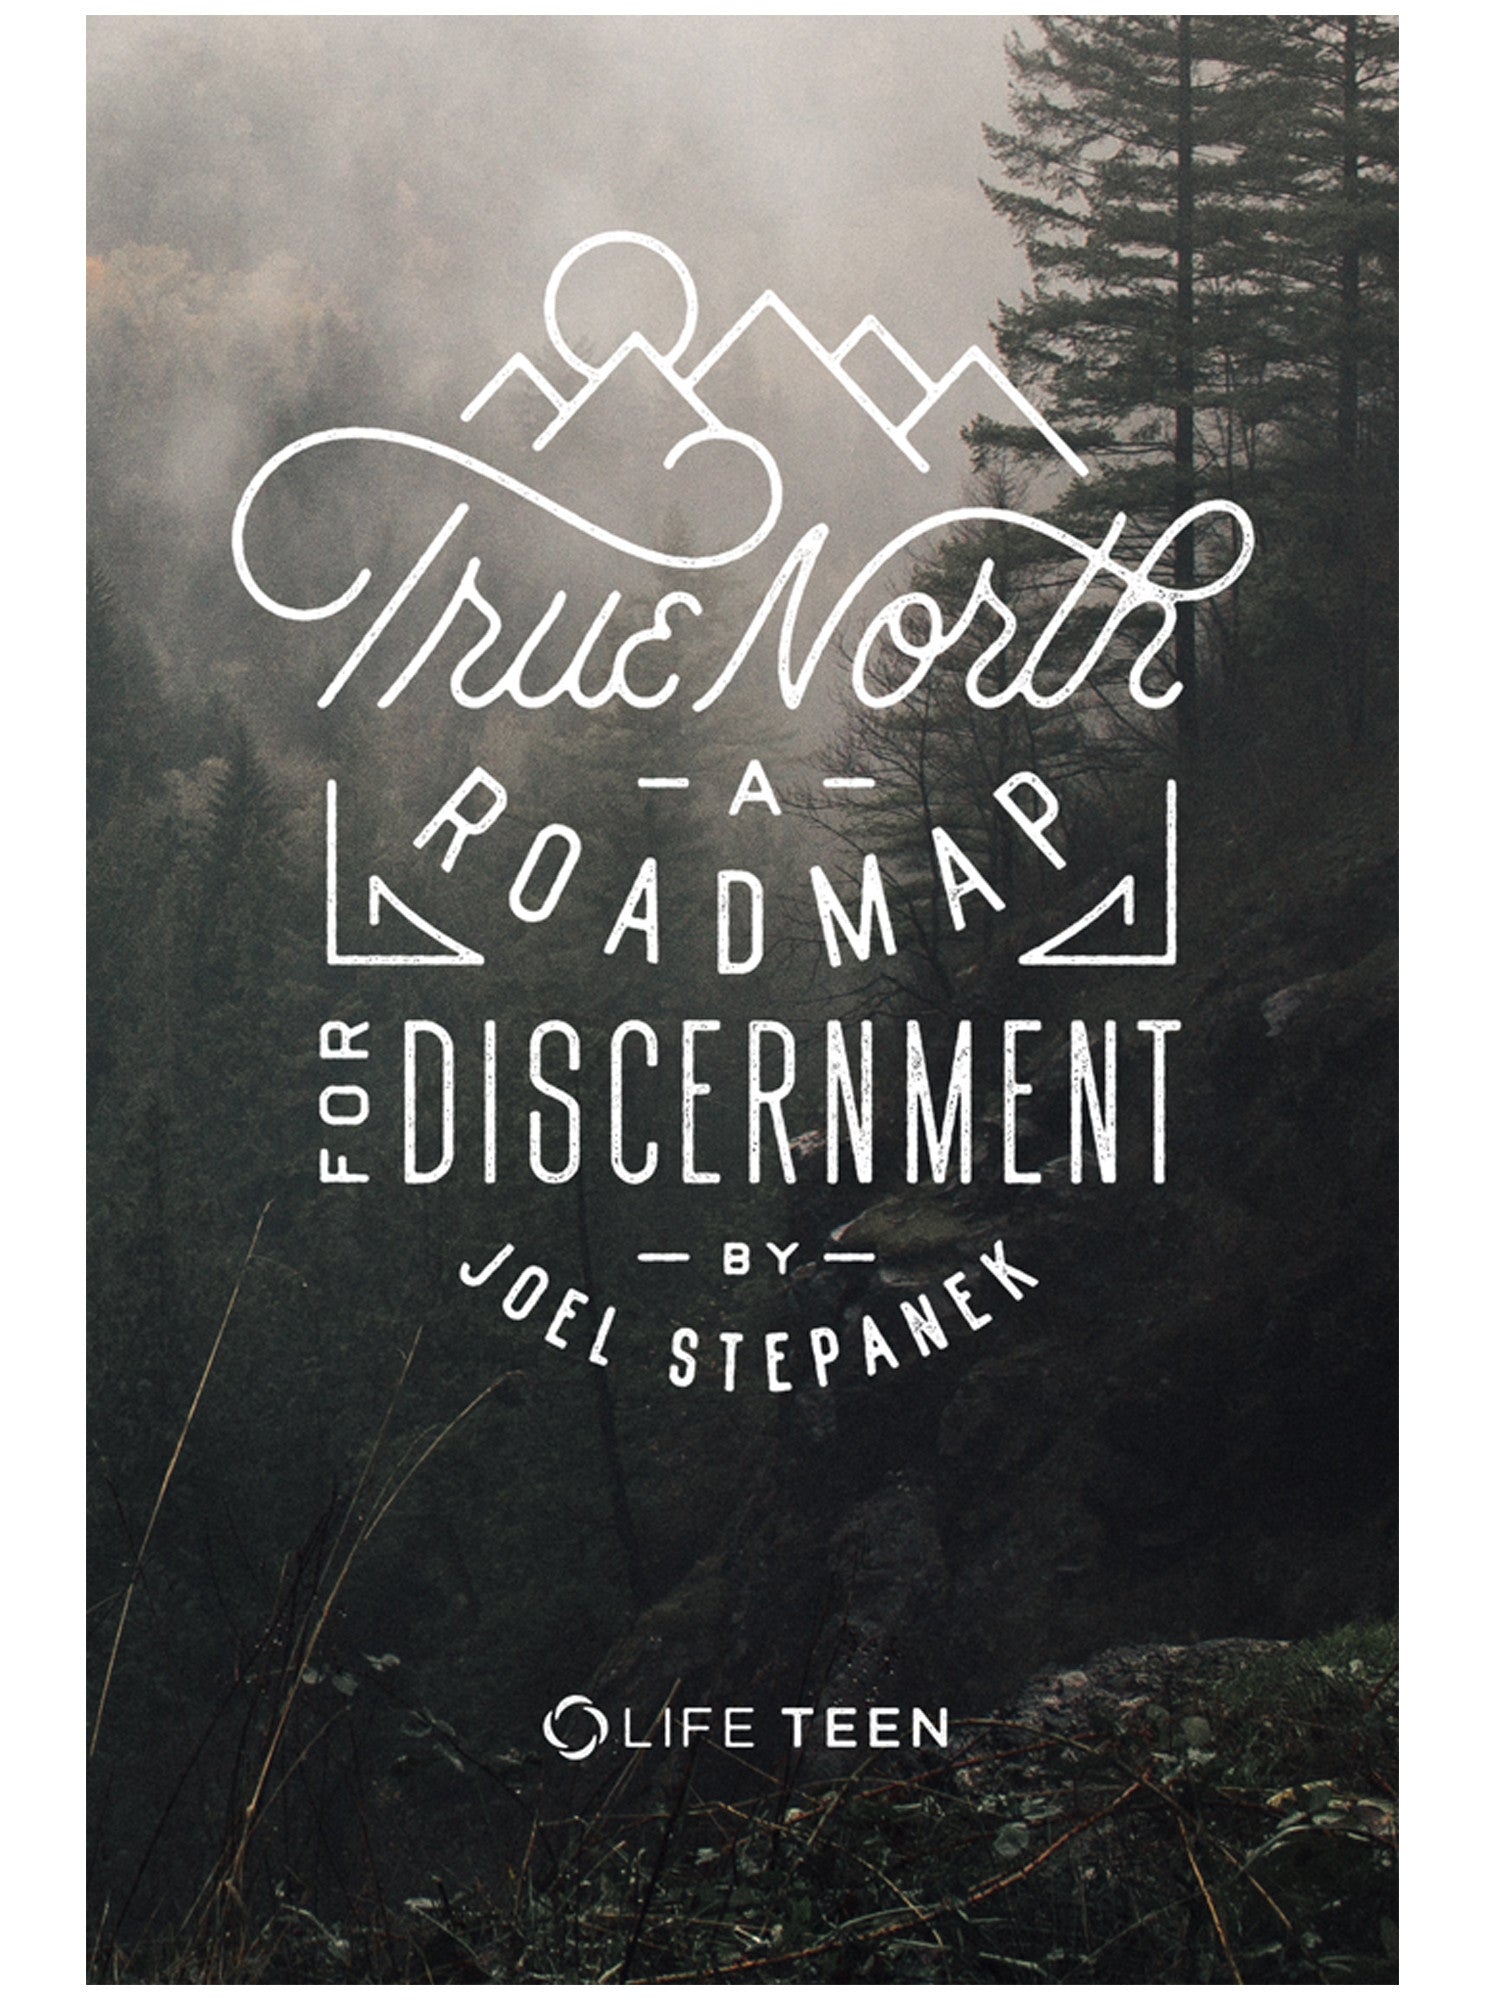 True North: A Roadmap for Discernment